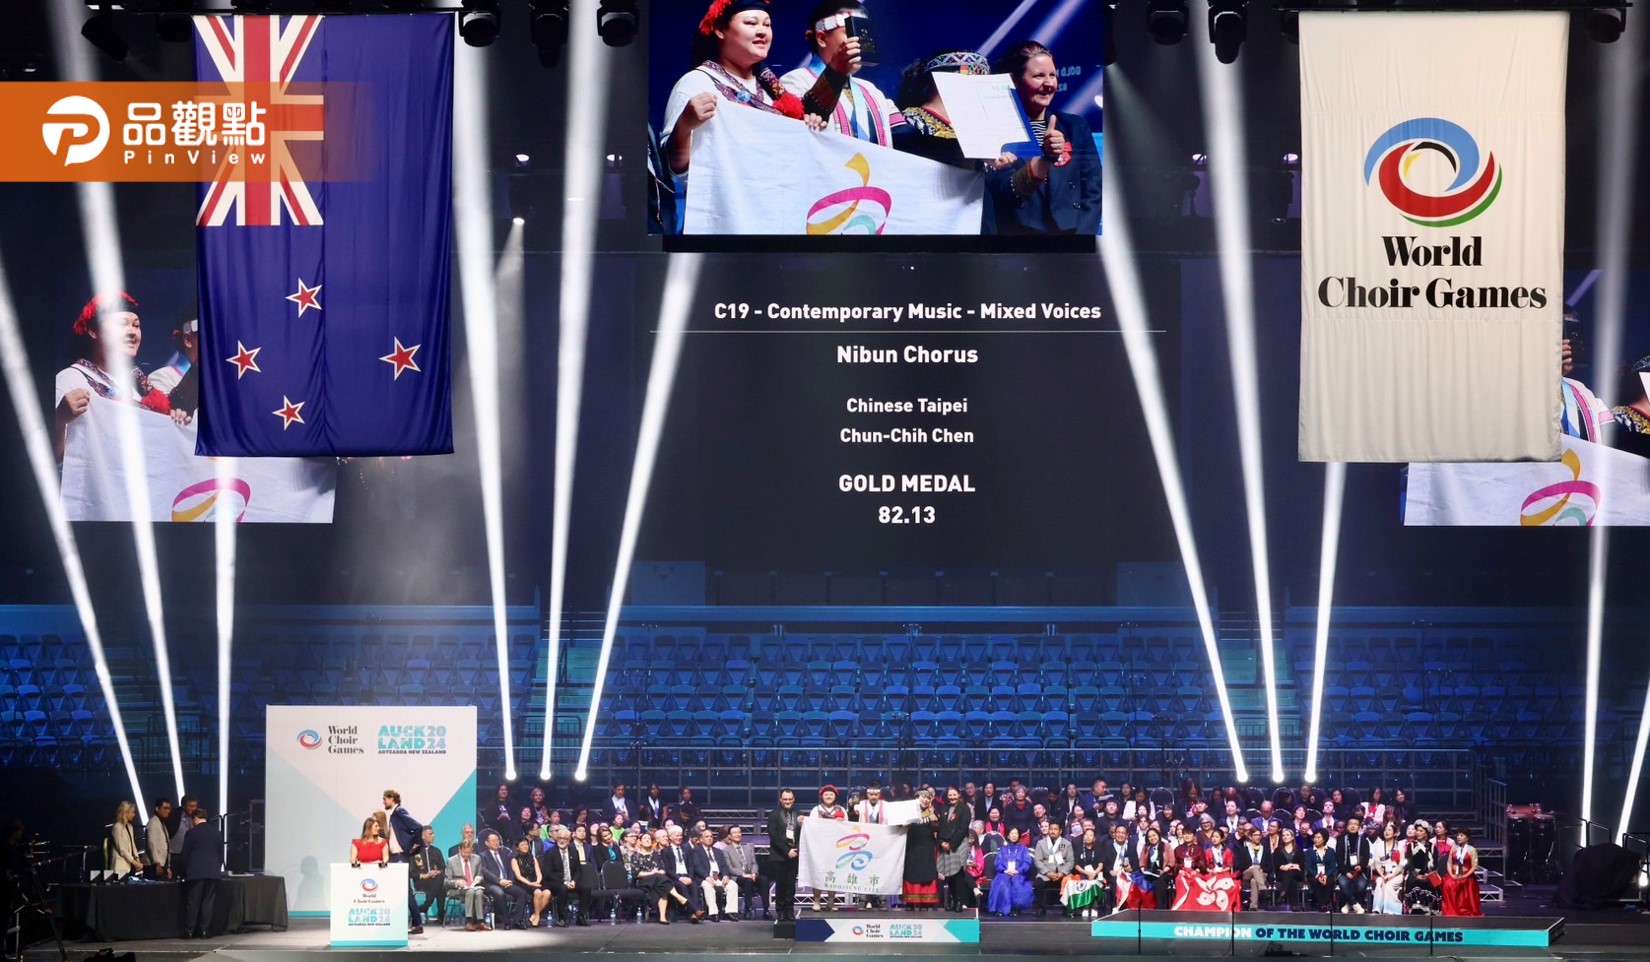 尼布恩合唱團紐西蘭世界合唱大賽 榮獲二面金牌